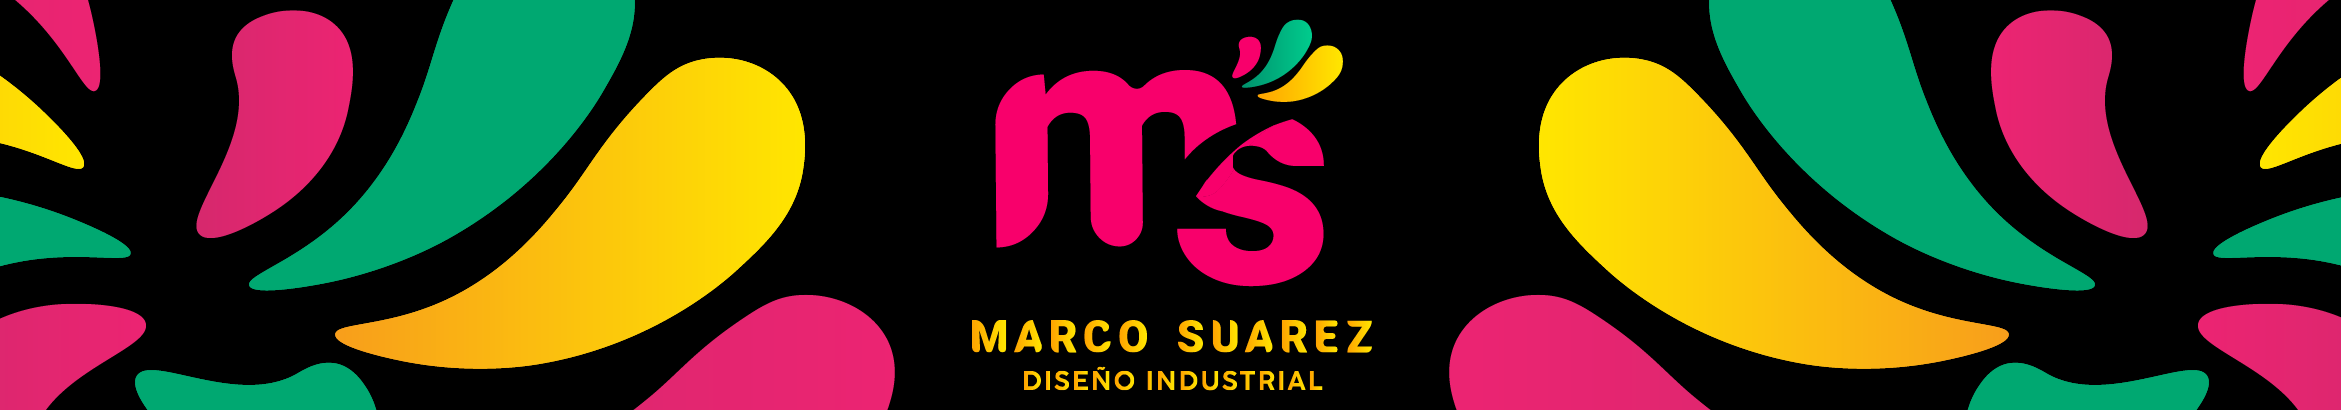 Marco Suarez's profile banner